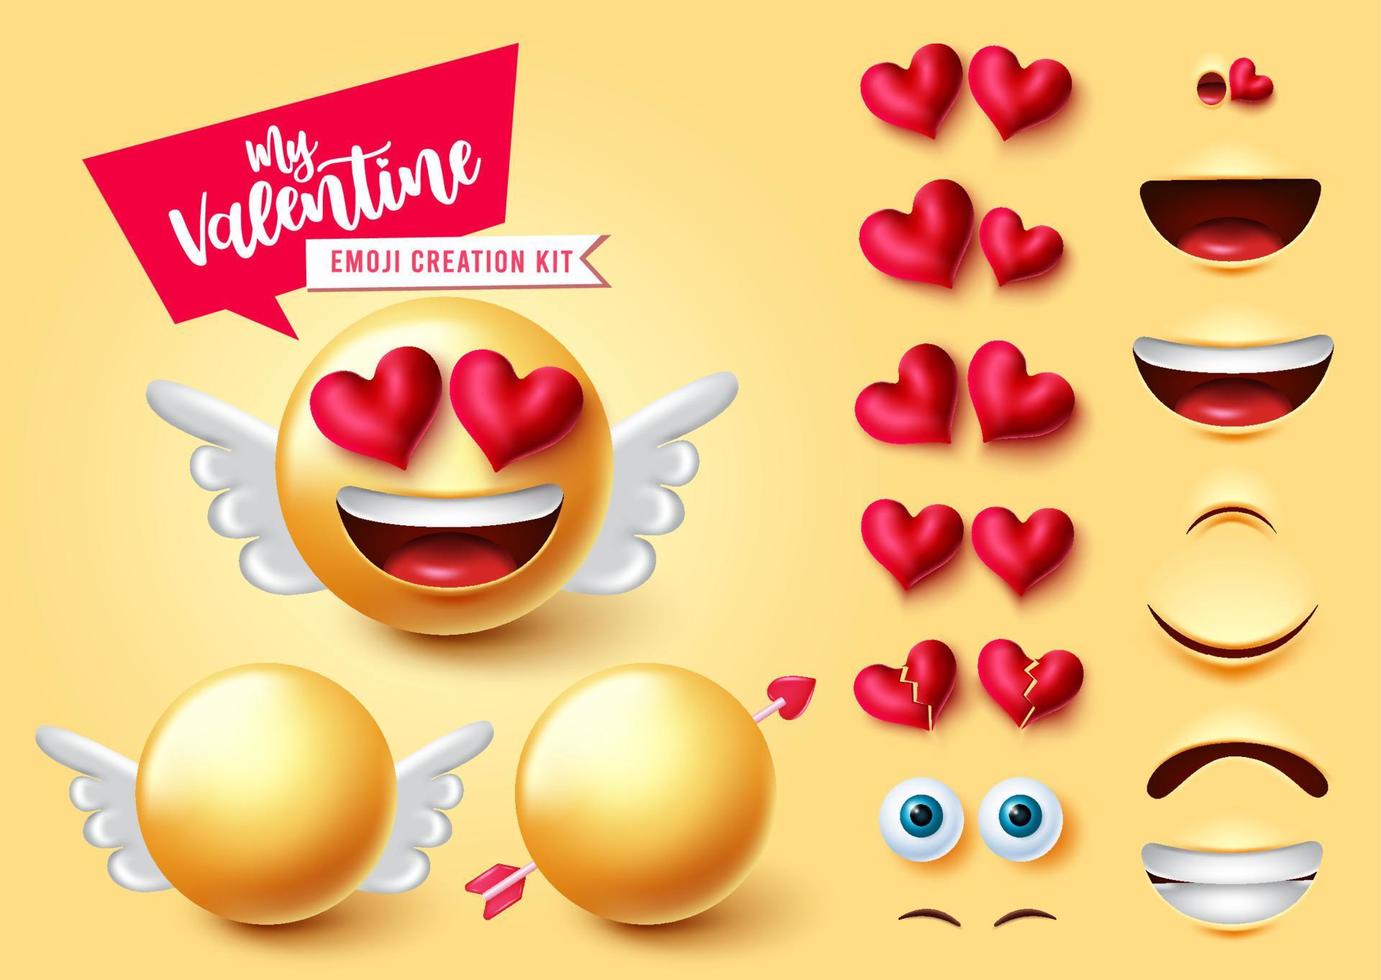 emoji valentijn schepper vector set. 3D-personagekit voor cupido-emoji's met vleugels en bewerkbare gezichtsdelen zoals harten, ogen en mond voor emoticon-valentijnsgezichtsuitdrukkingontwerp. vectorillustratie.